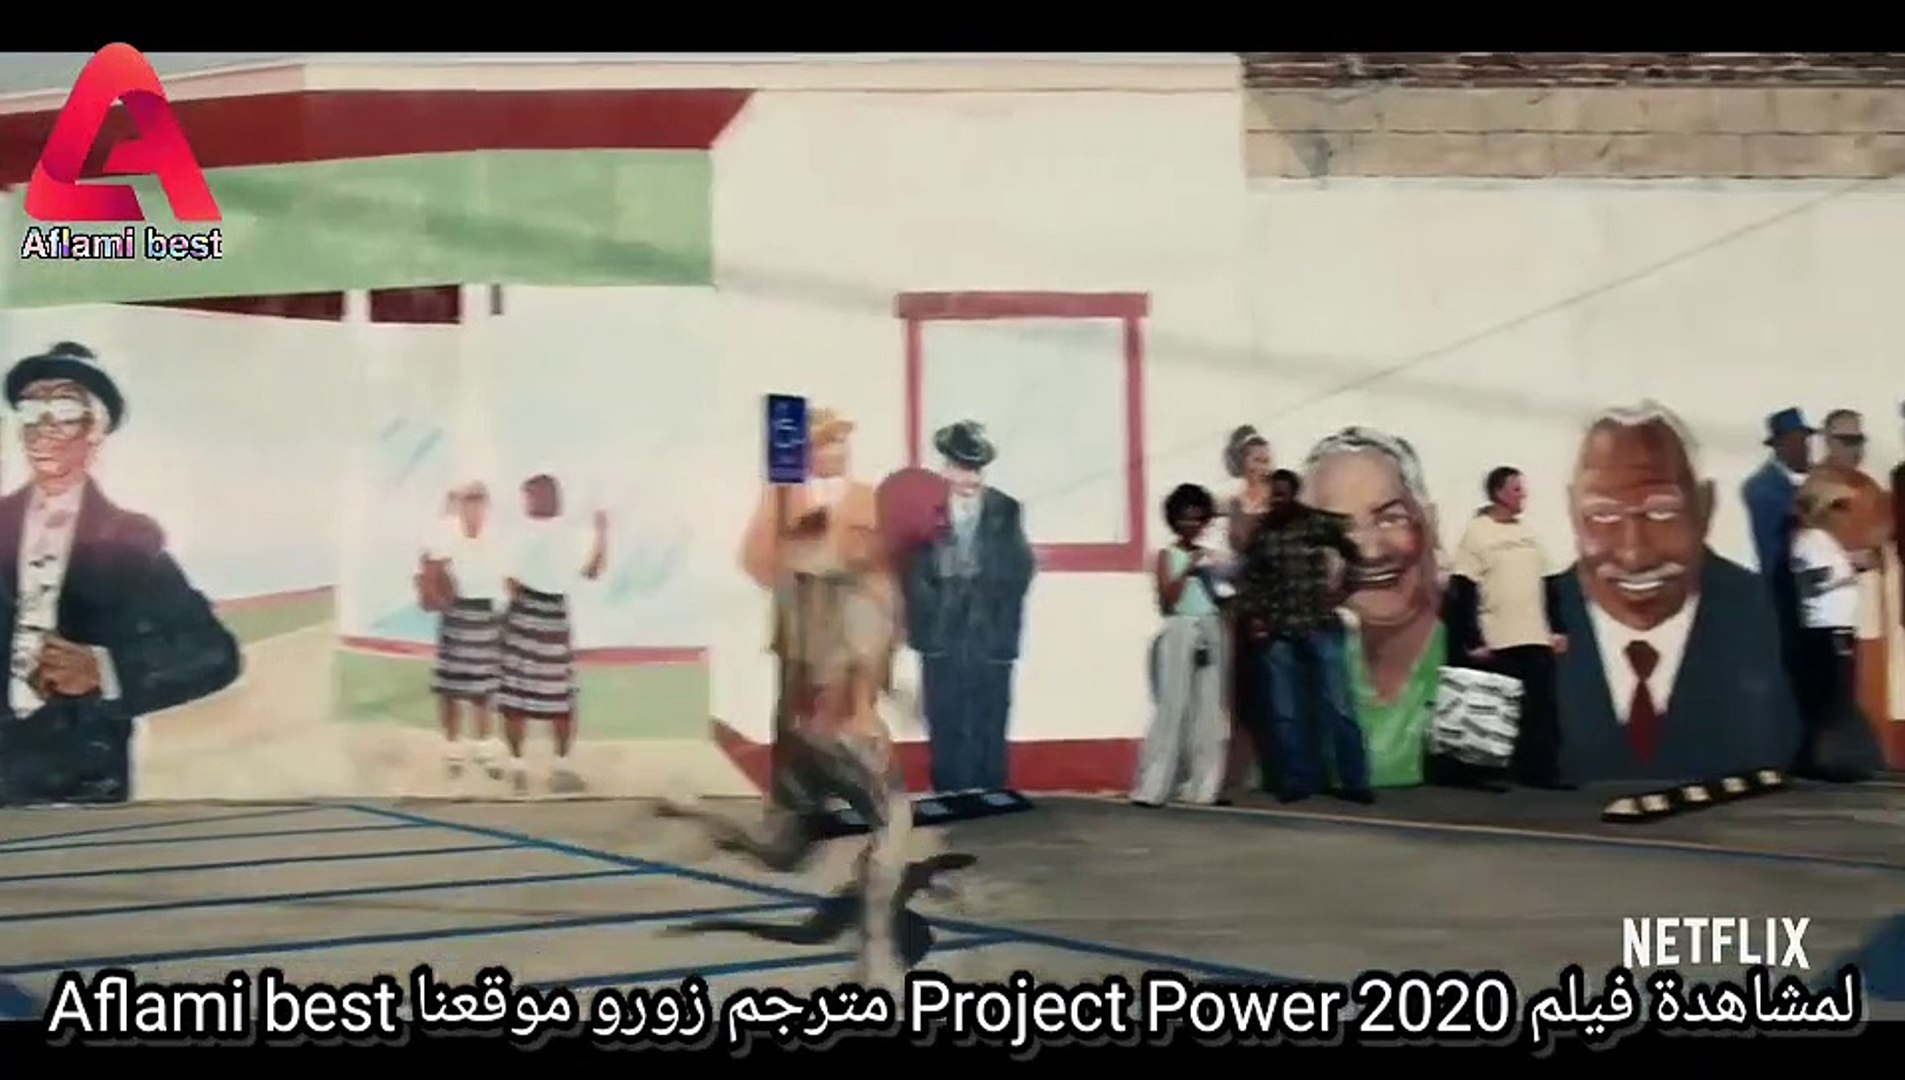 مشاهدة فيلم Project Power 2020 مترجم اونلاين على موقع Aflami best - فيديو  Dailymotion